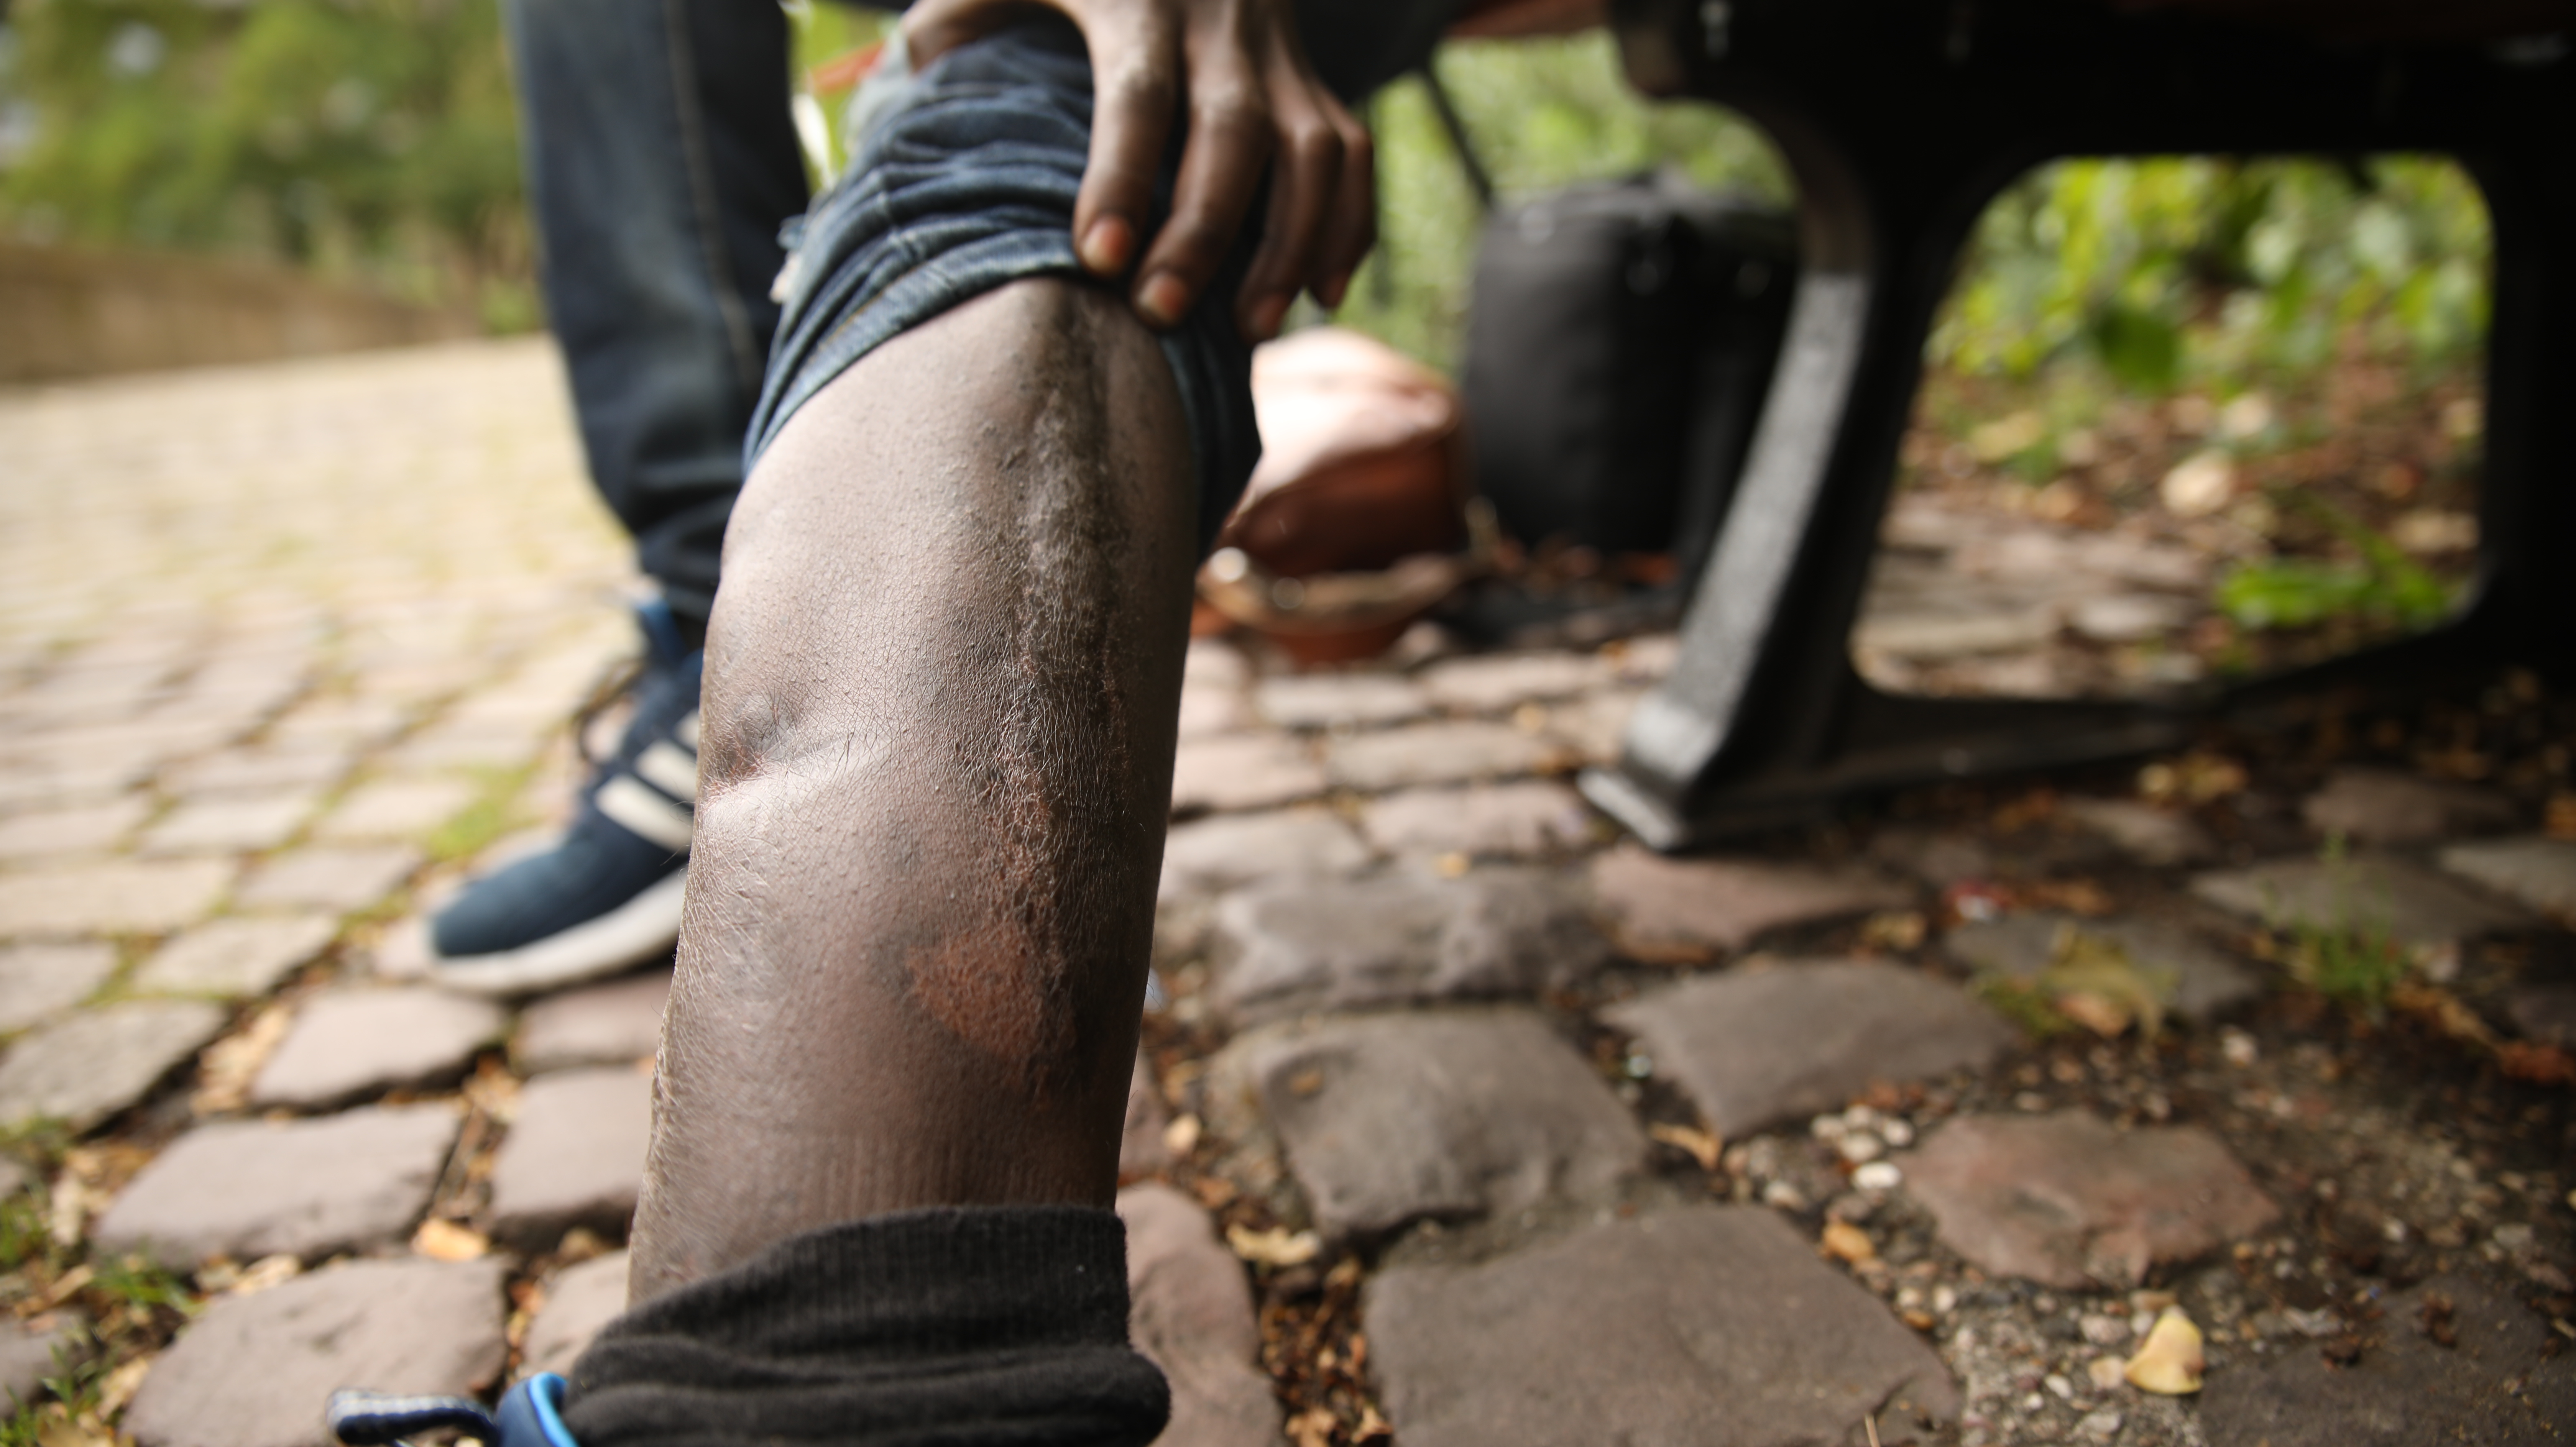 Mineurs isolés, la double peine - Semaï, jeté à la rue avec sa jambe tordue (1/2)